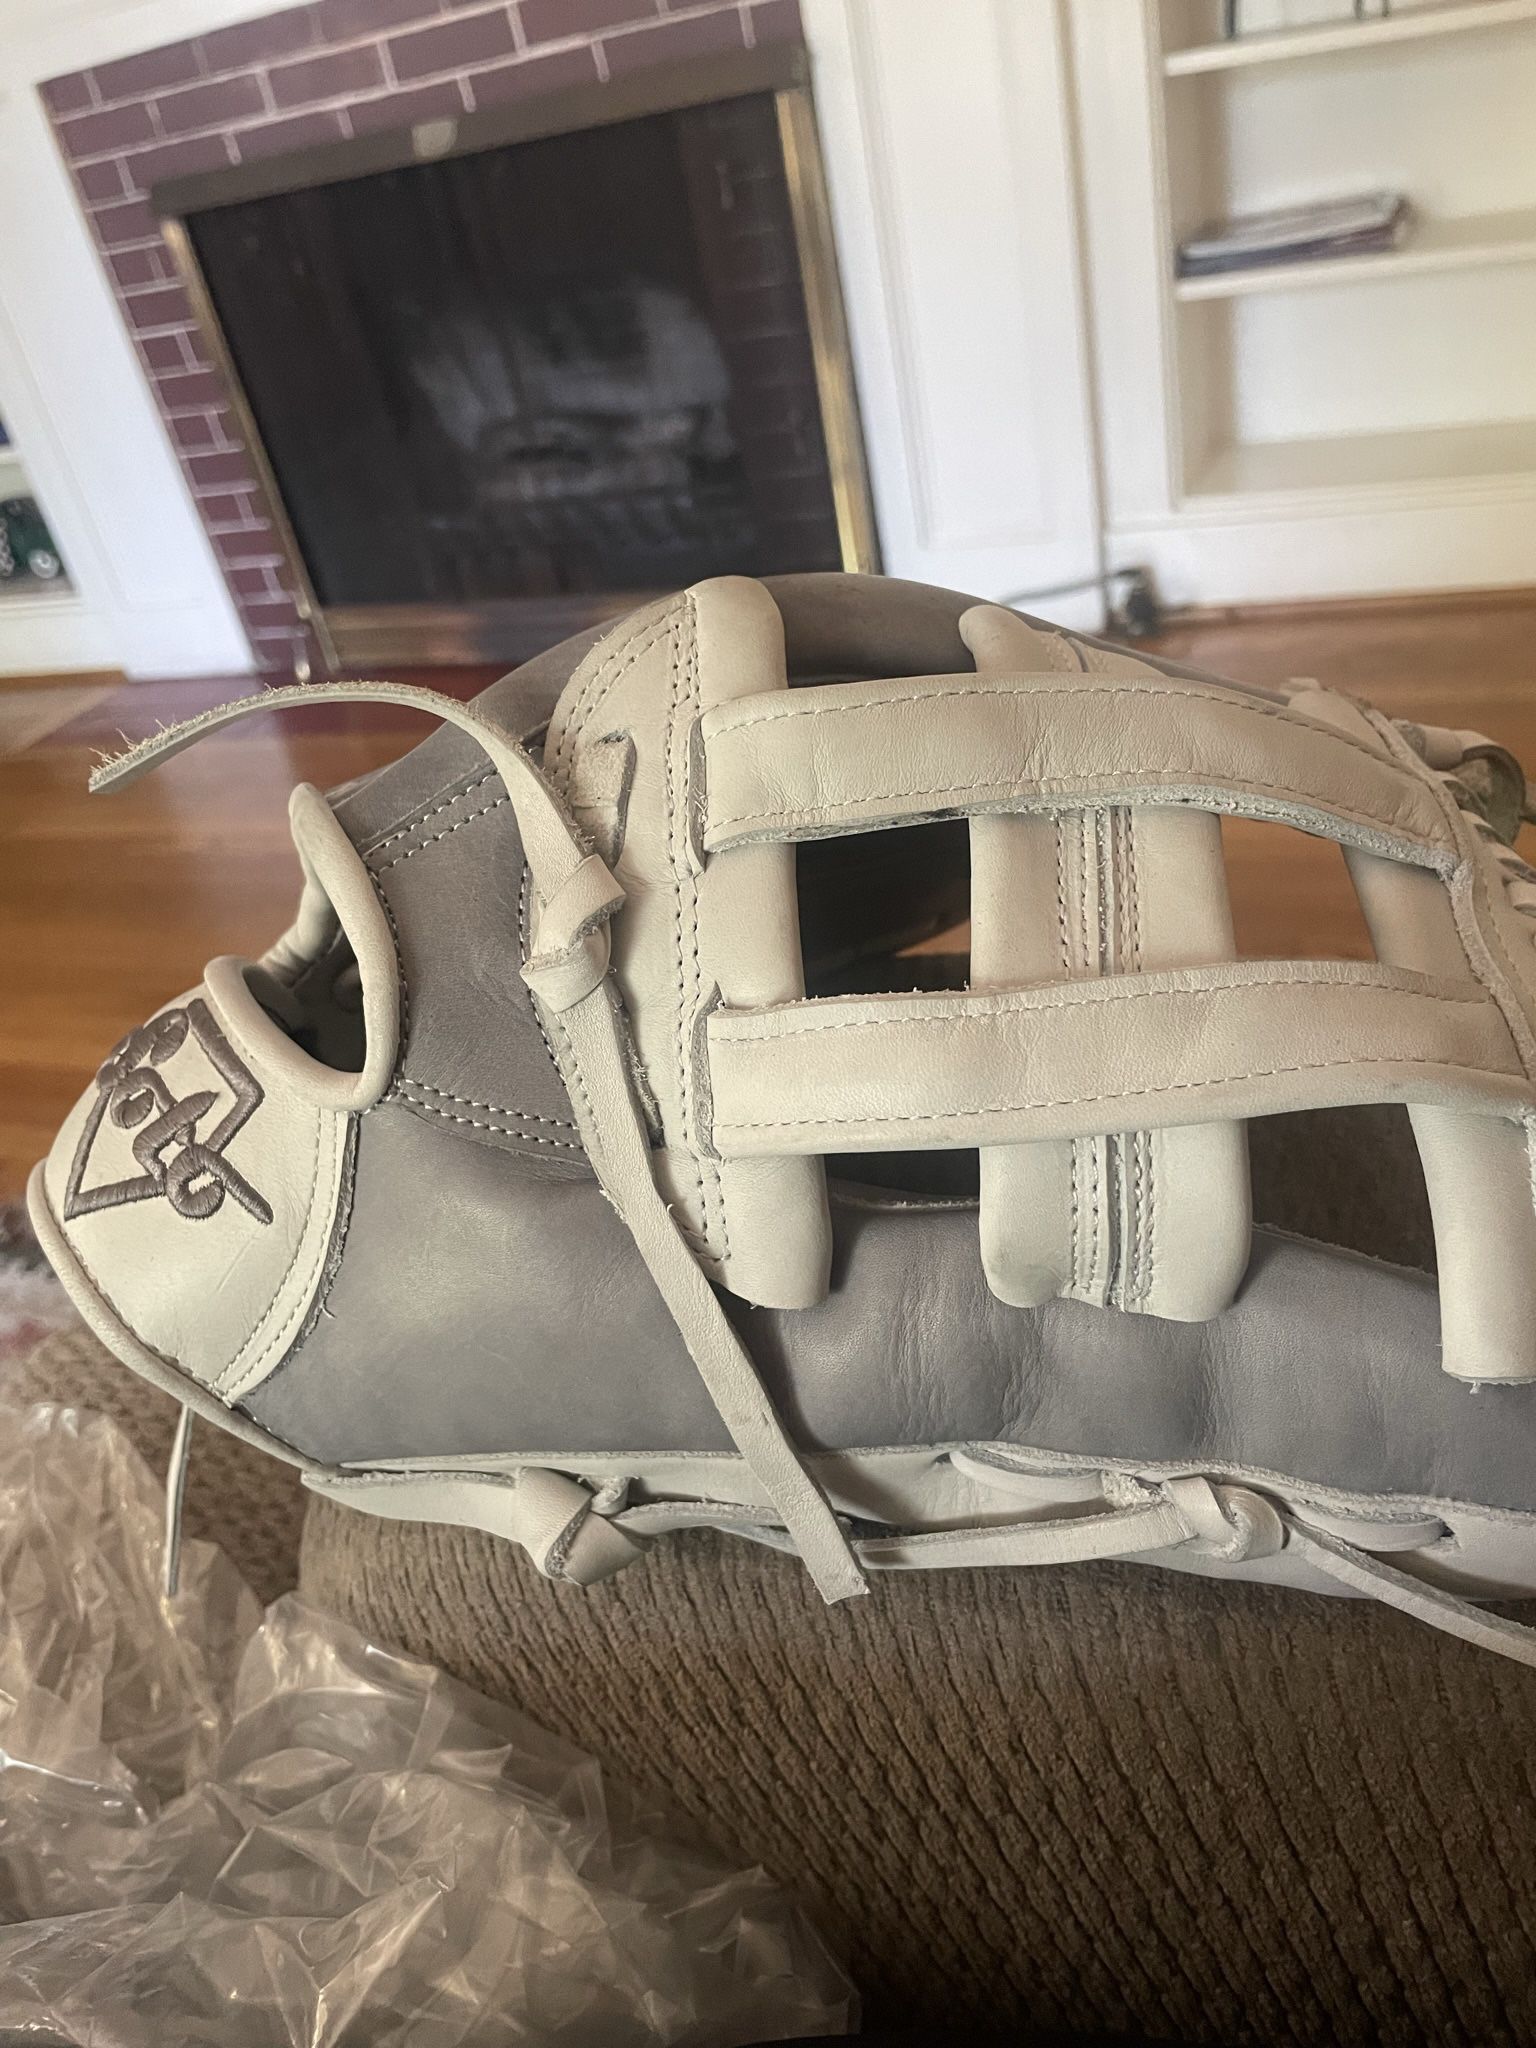 Baseball And Softball Glove